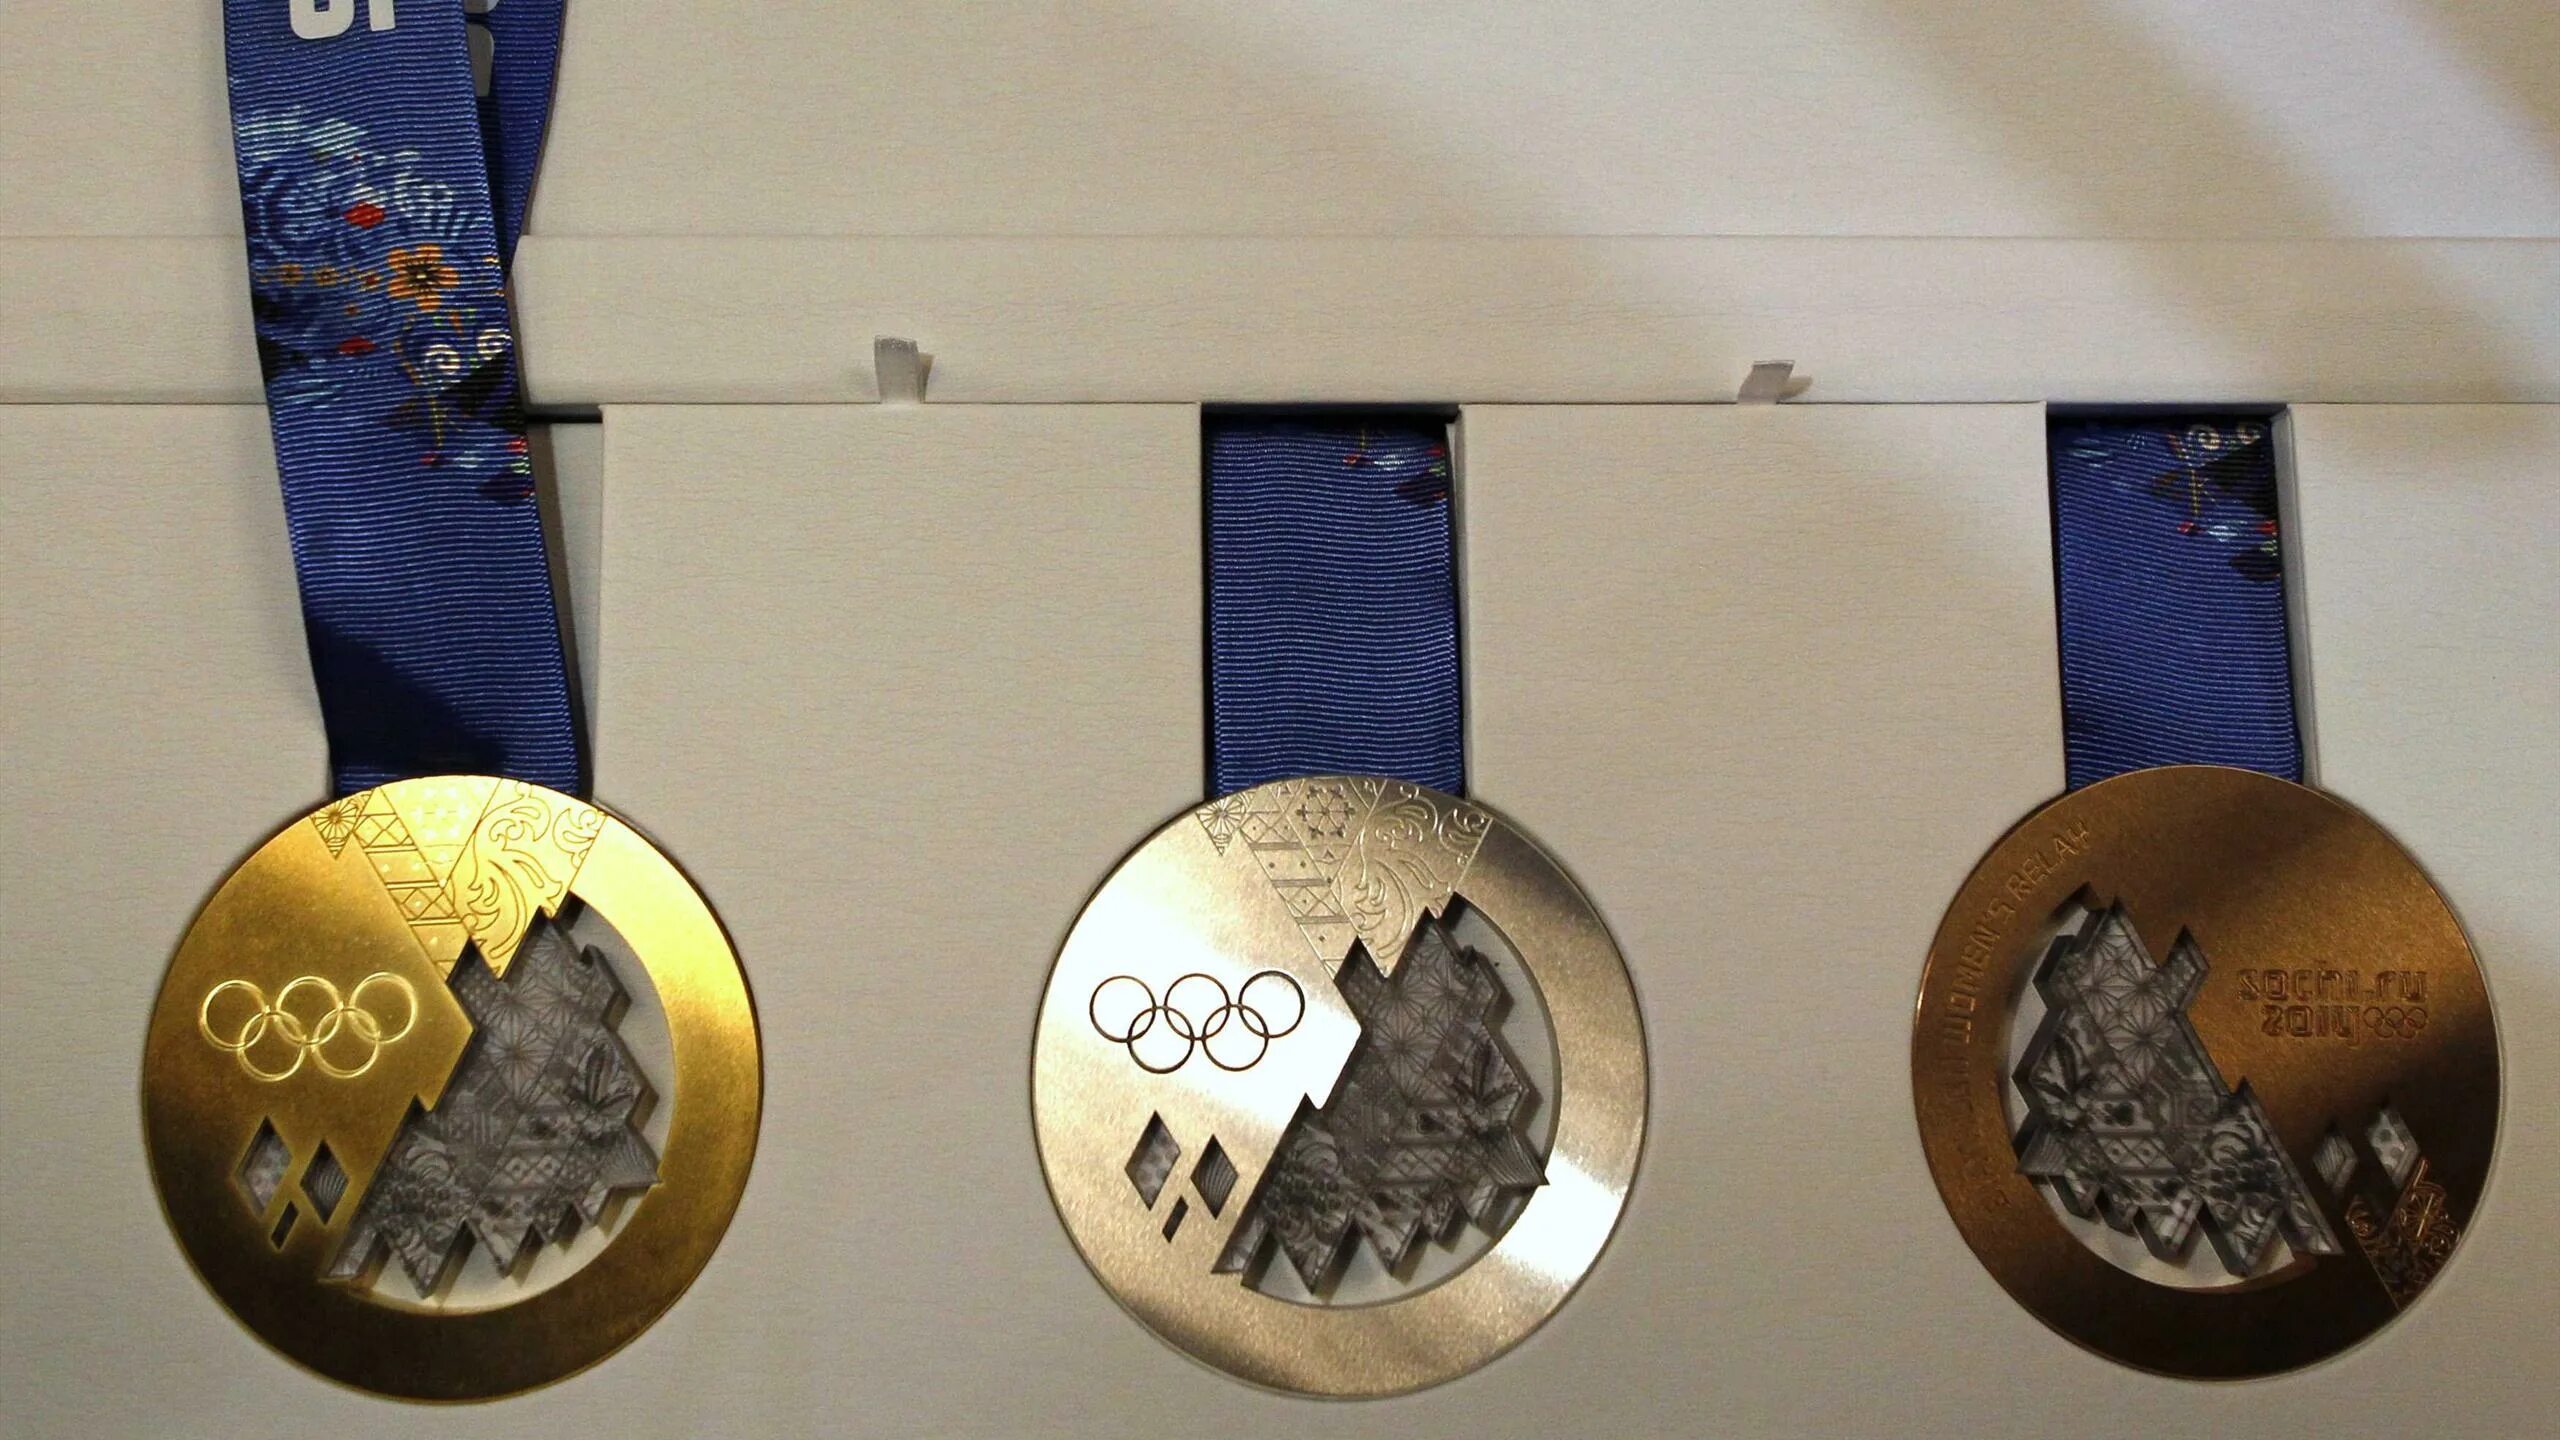 Олимпийская медаль 2014 года. Олимпийские игры в Сочи медали. Krieghoff k-80 Олимпийские медали. Олимпийские игры в Сочи 2014 медали. Креативные медали.